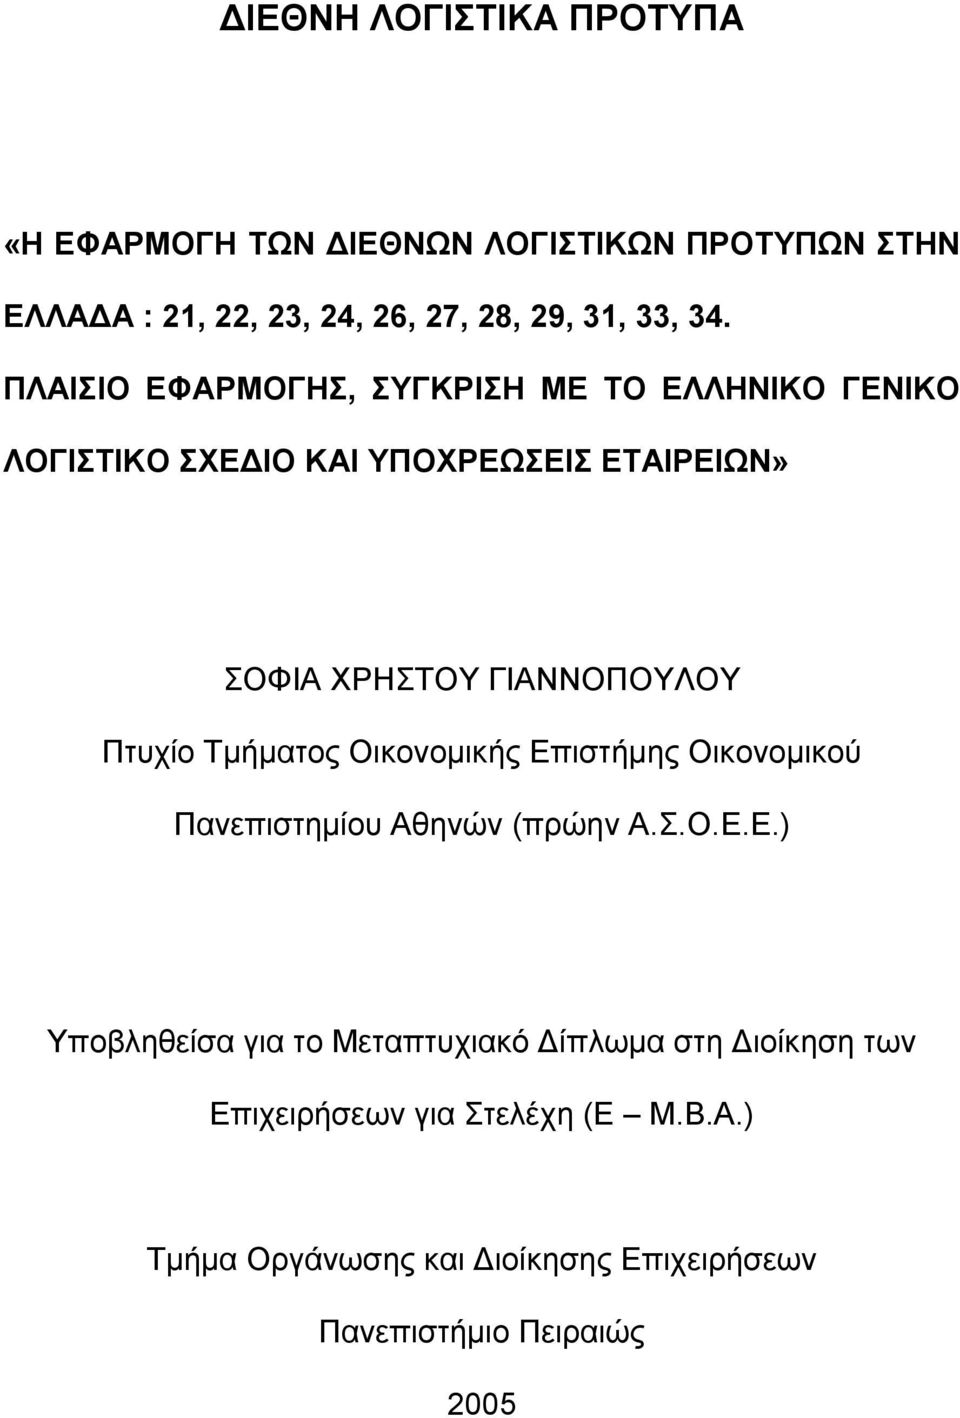 Πτυχίο Τμήματος Οικονομικής Επιστήμης Οικονομικού Πανεπιστημίου Αθηνών (πρώην Α.Σ.Ο.Ε.Ε.) Υποβληθείσα για το Μεταπτυχιακό Δίπλωμα στη Διοίκηση των Επιχειρήσεων για Στελέχη (E M.